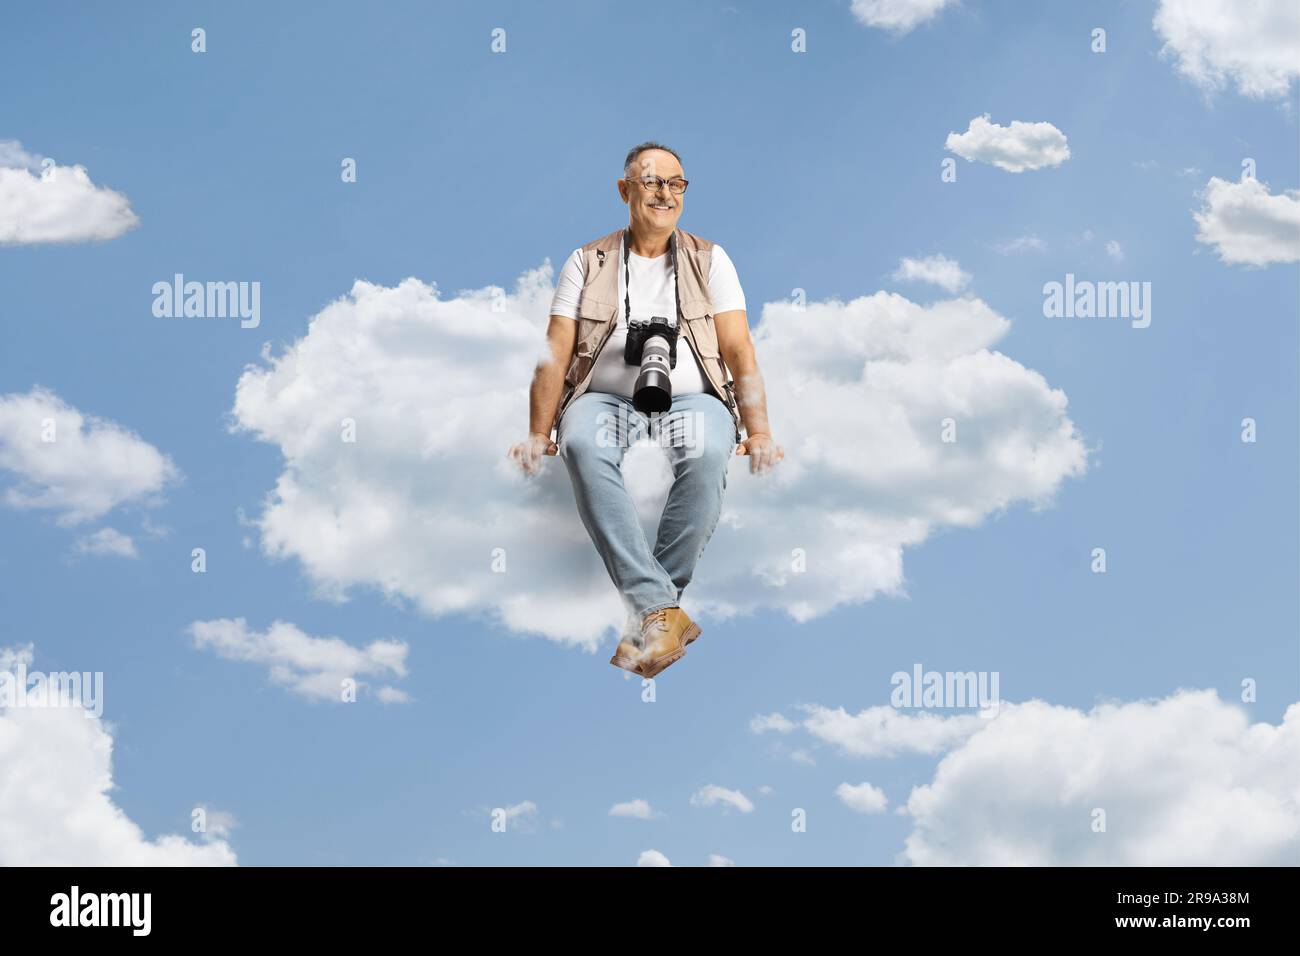 Fotograf schwebt auf einer Wolke am Himmel Stockfoto